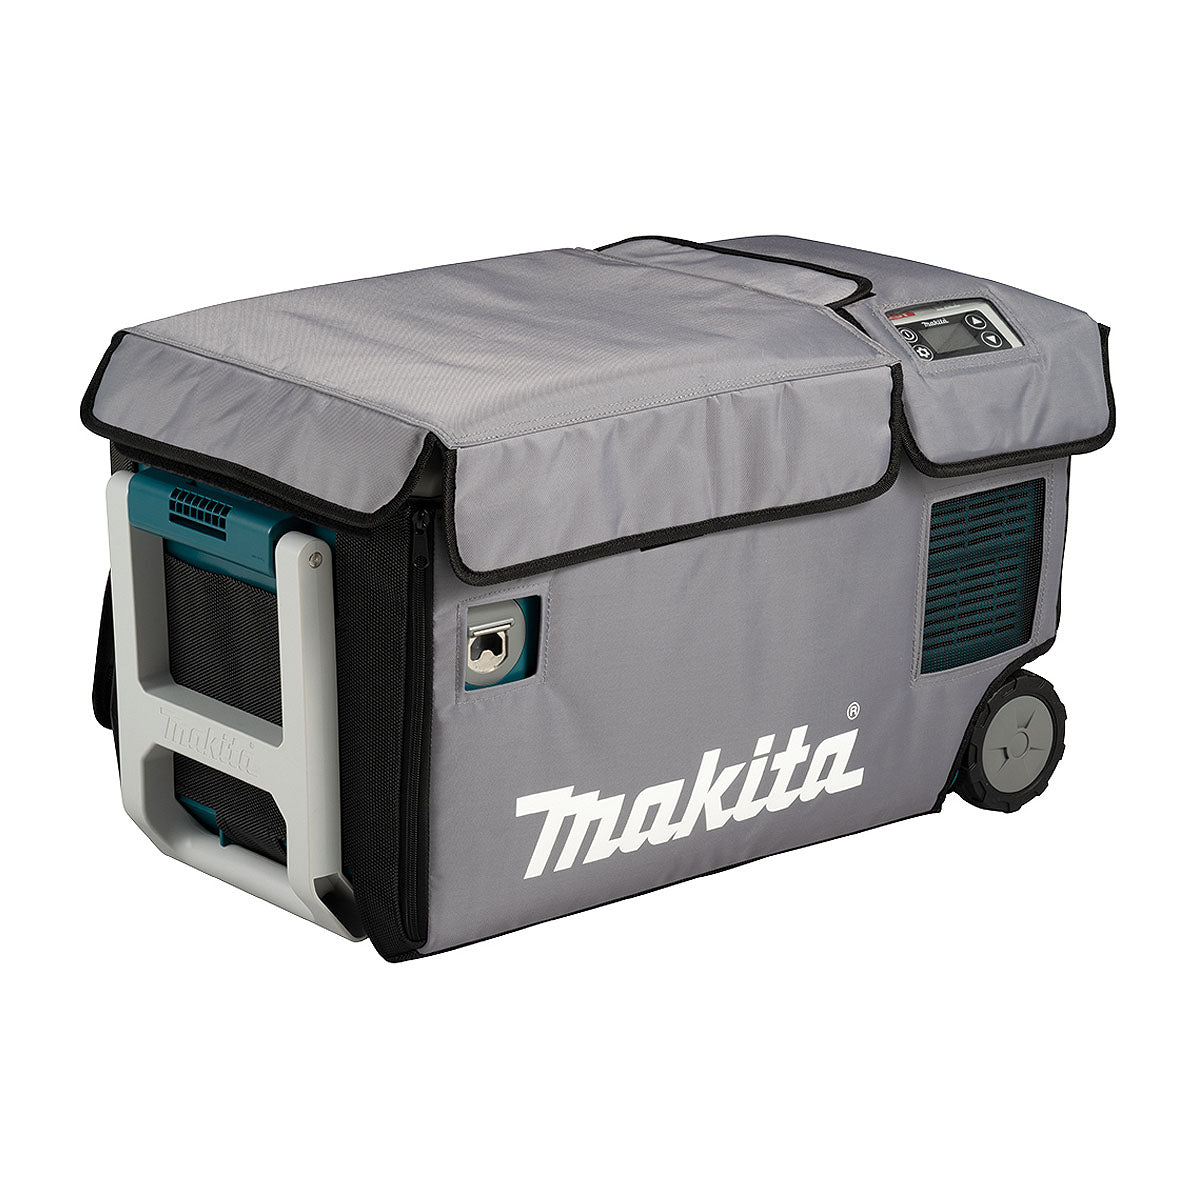 Tấm bảo vệ Makita CE00000001 dùng cho máy làm mát và làm ấm 20 lít Makita CW001G
Protective Fridge Cover Suits